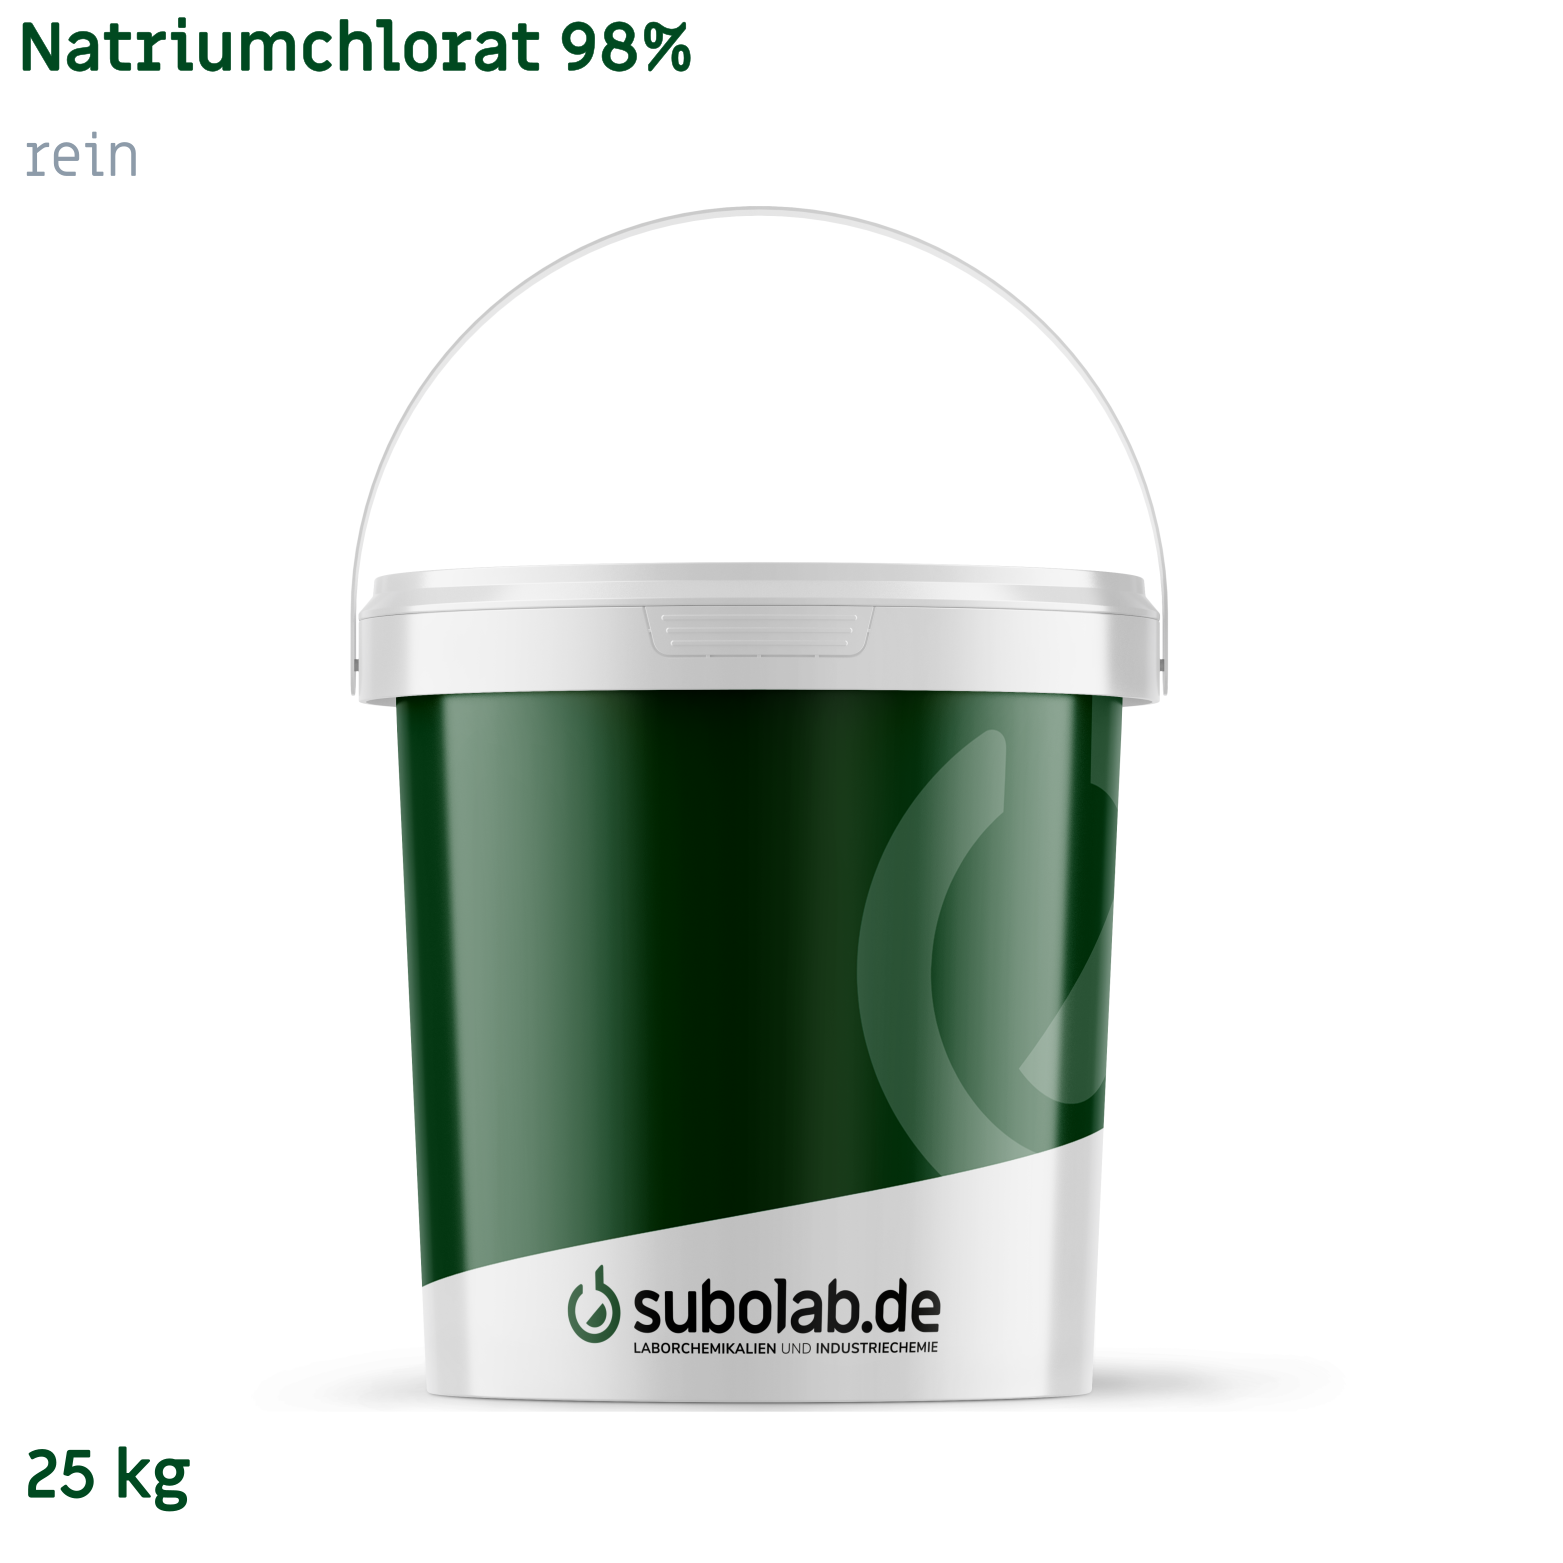 Bild von Natriumchlorat 98% rein (25 kg)